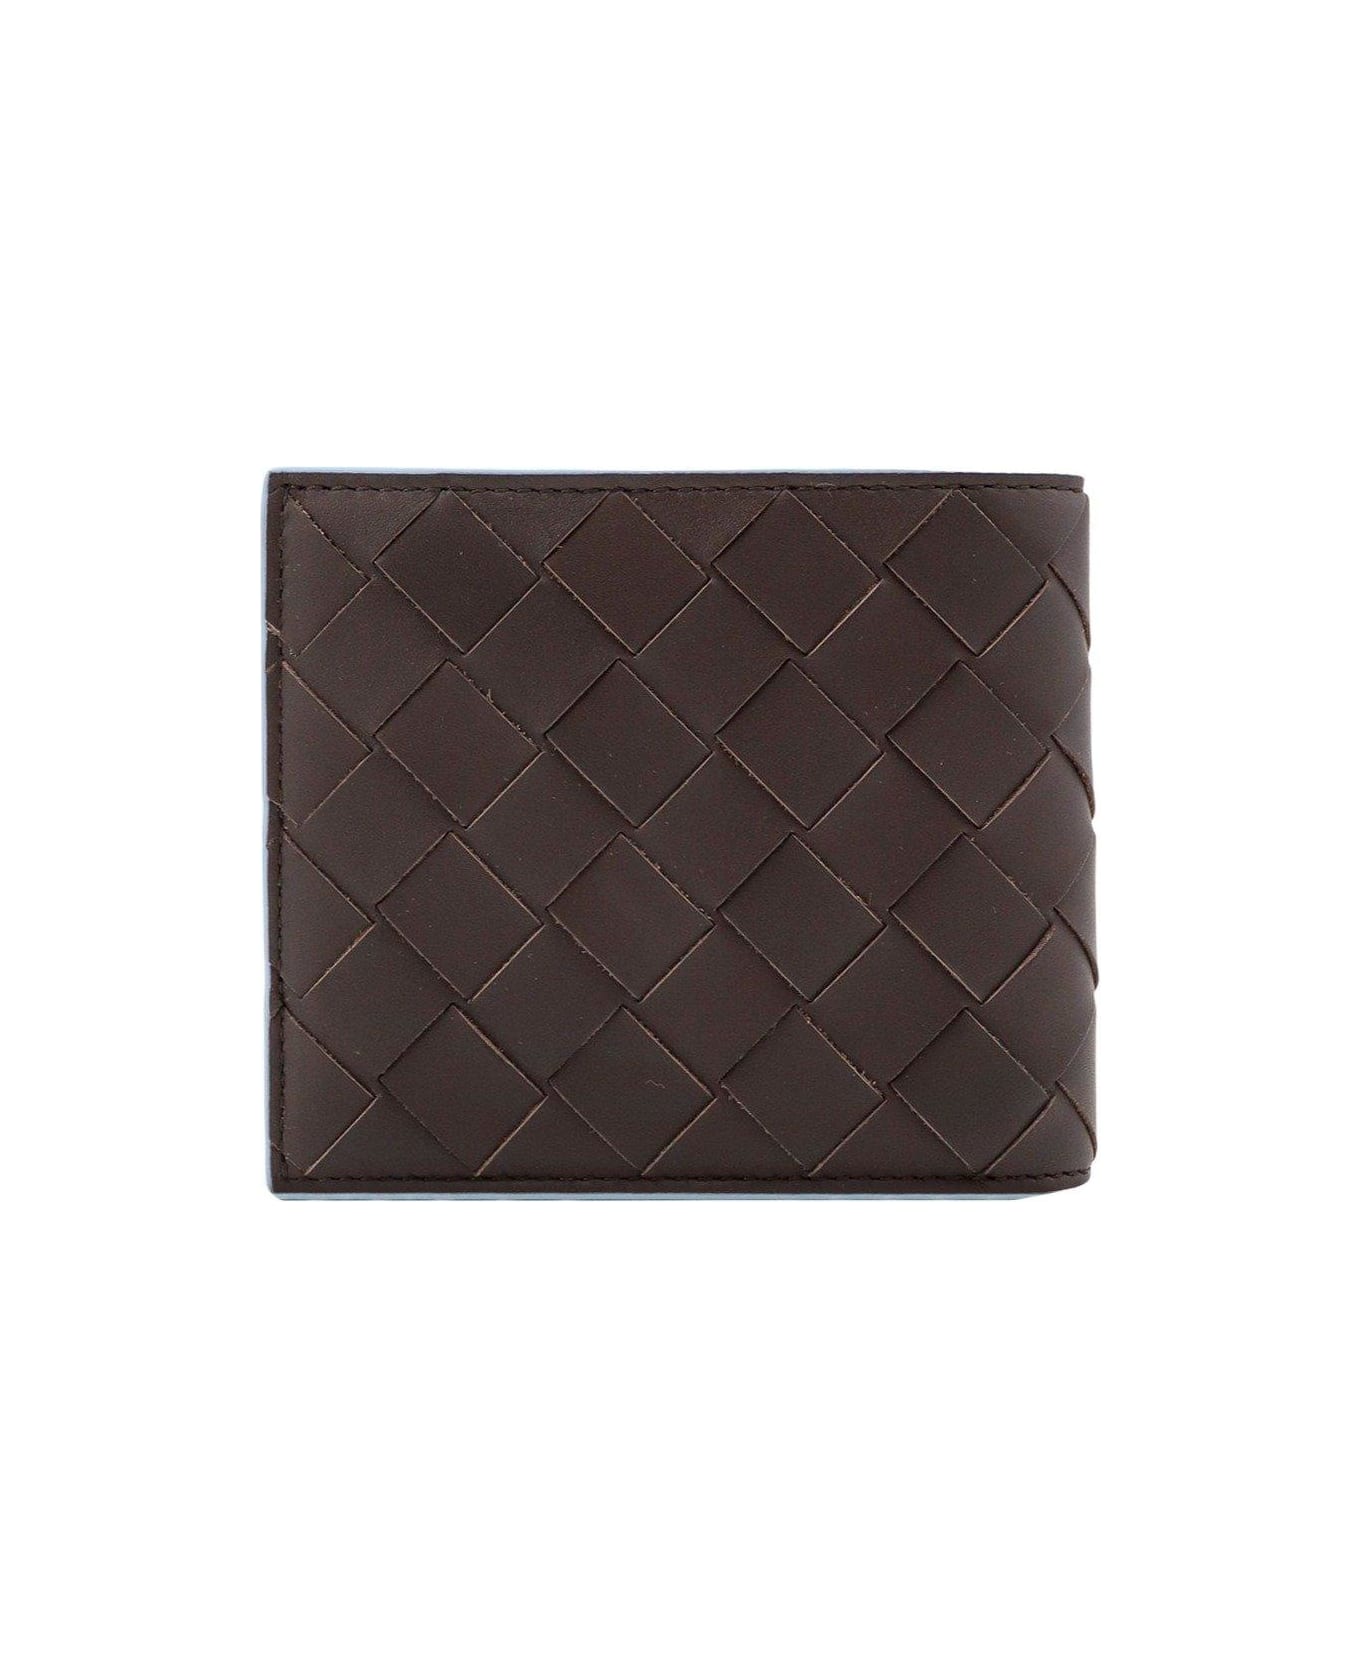 Bottega Veneta Intrecciato Bi-fold Wallet - Brown 財布